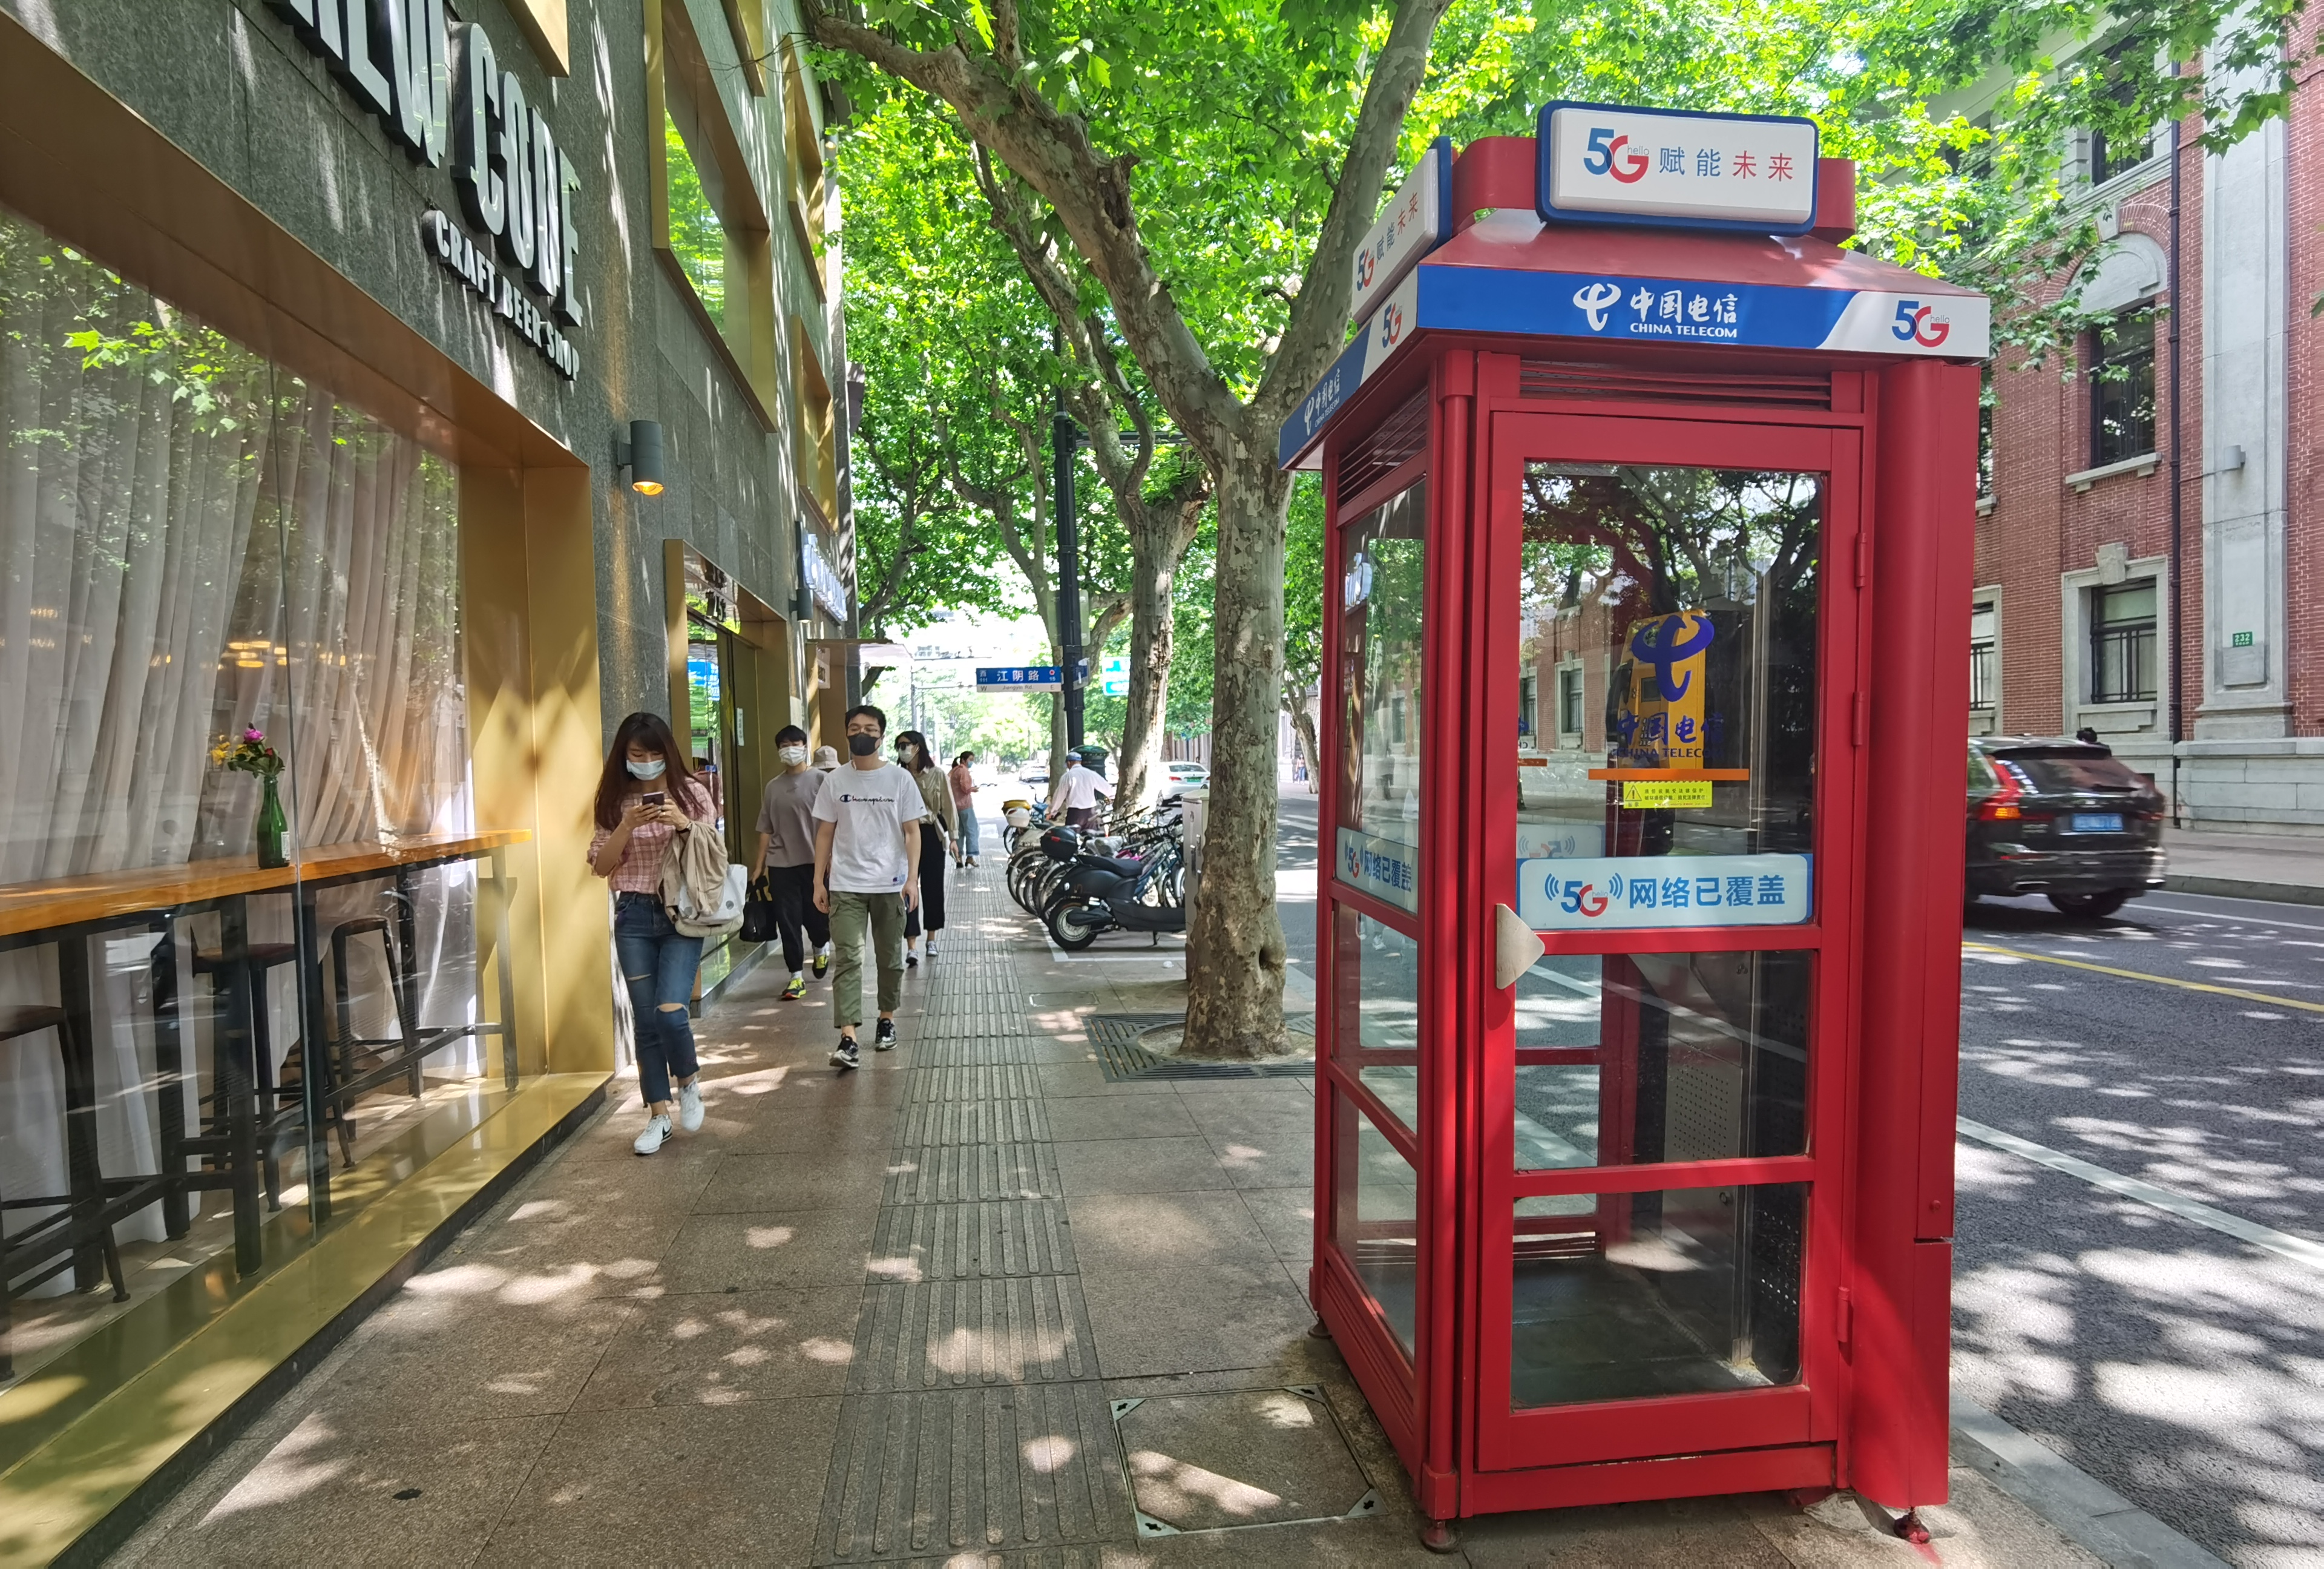 上海公用电话亭变身增加智慧叫车新功能